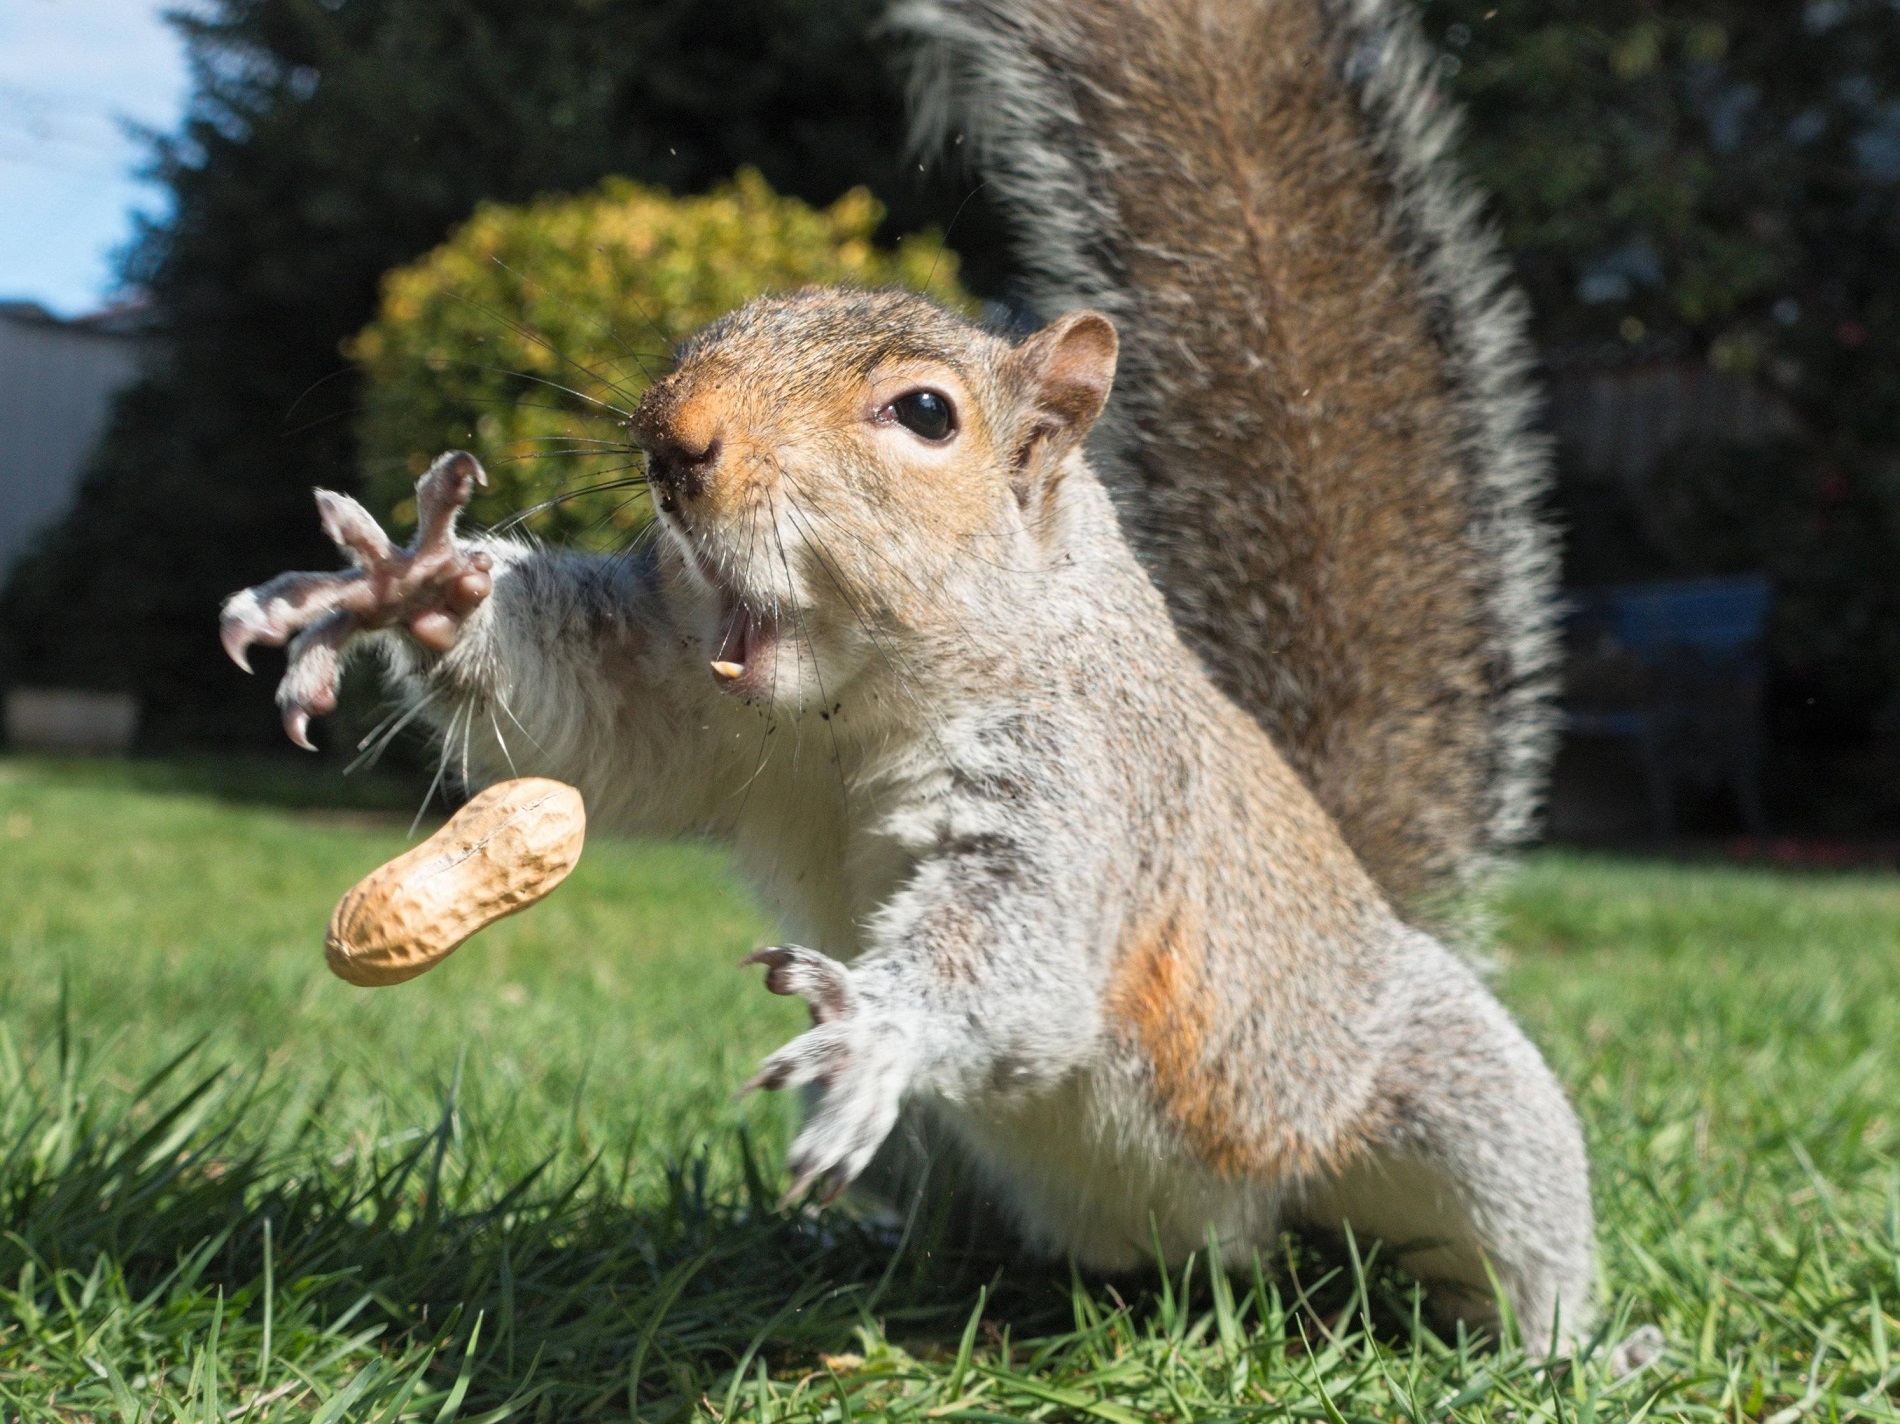 Squirrel catches peanuts